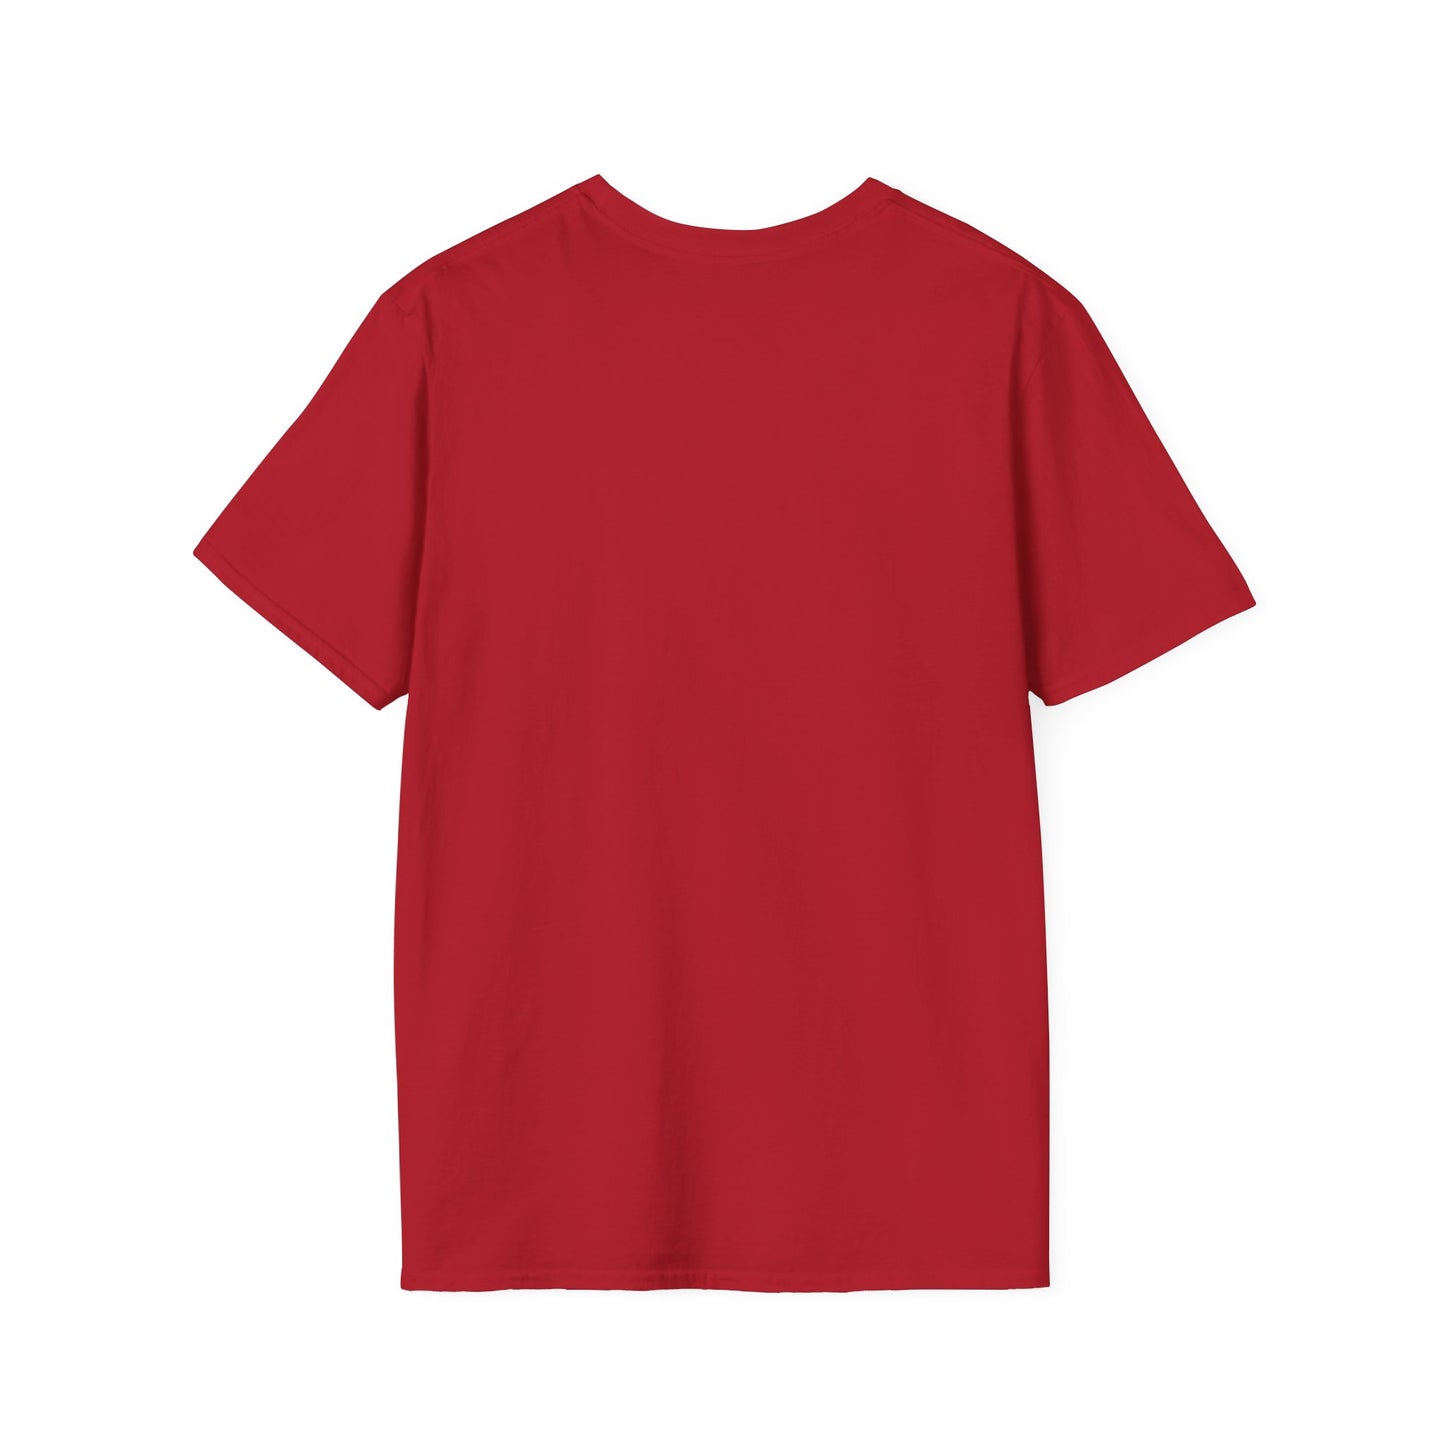 Sassy Mom Tye Dye Unisex Softstyle T-Shirt